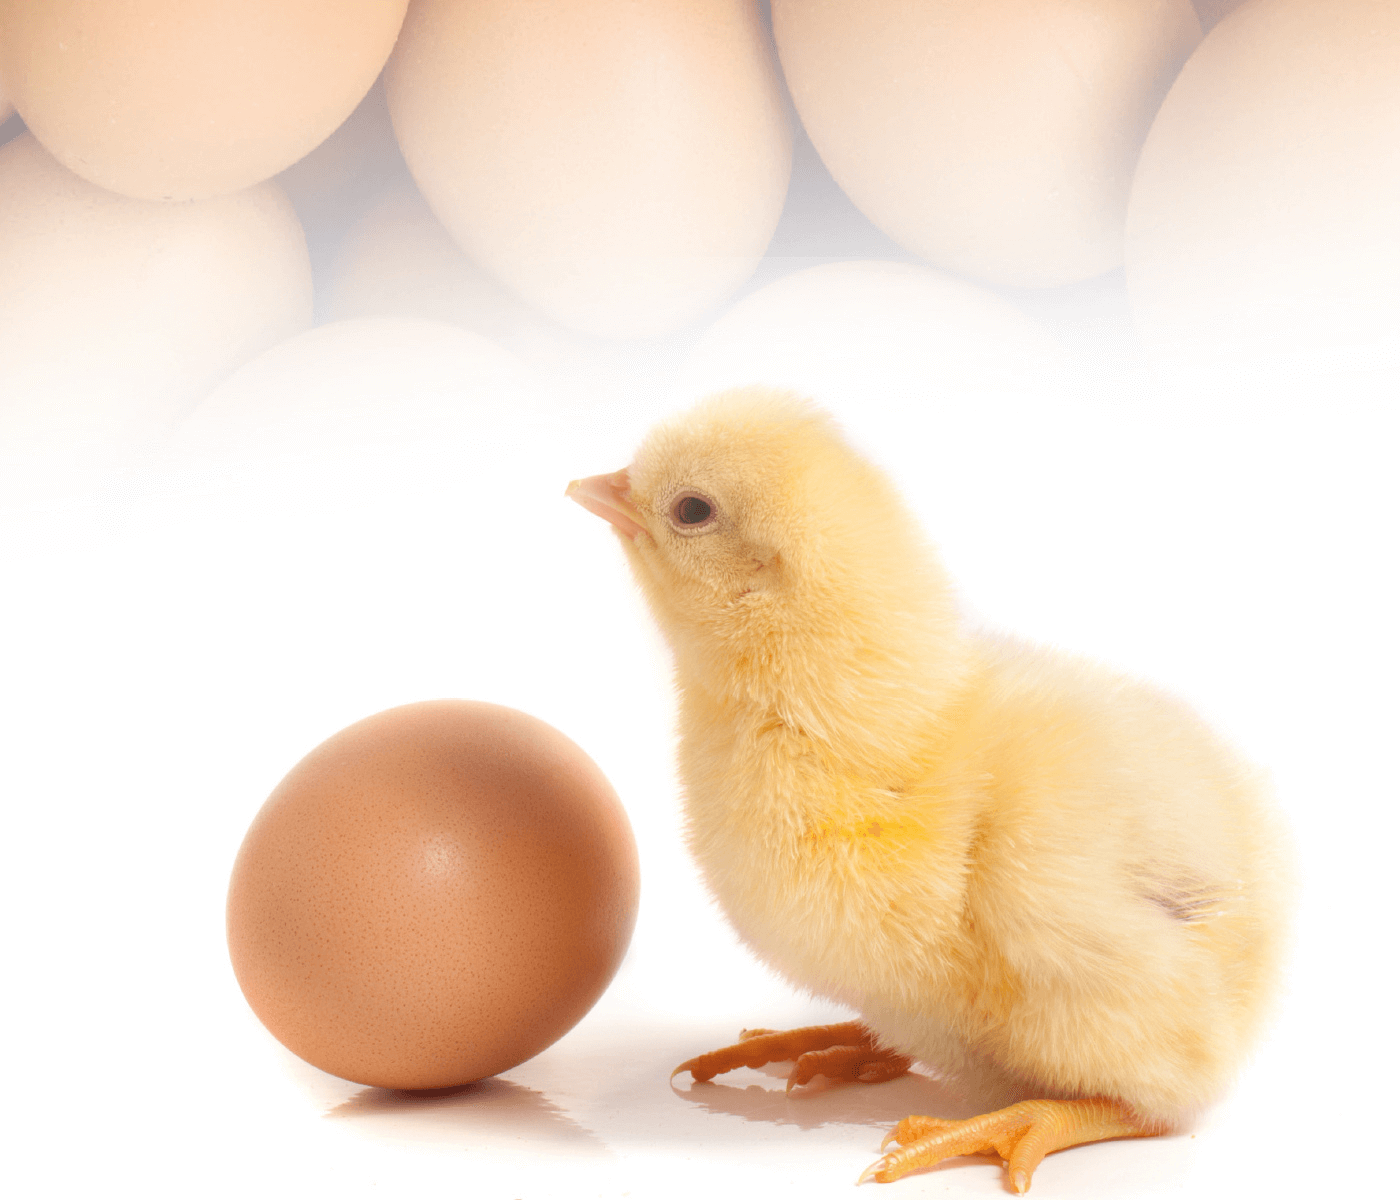 Biochem traz solução para ovos com mais qualidade, sem trincas e sujeiras